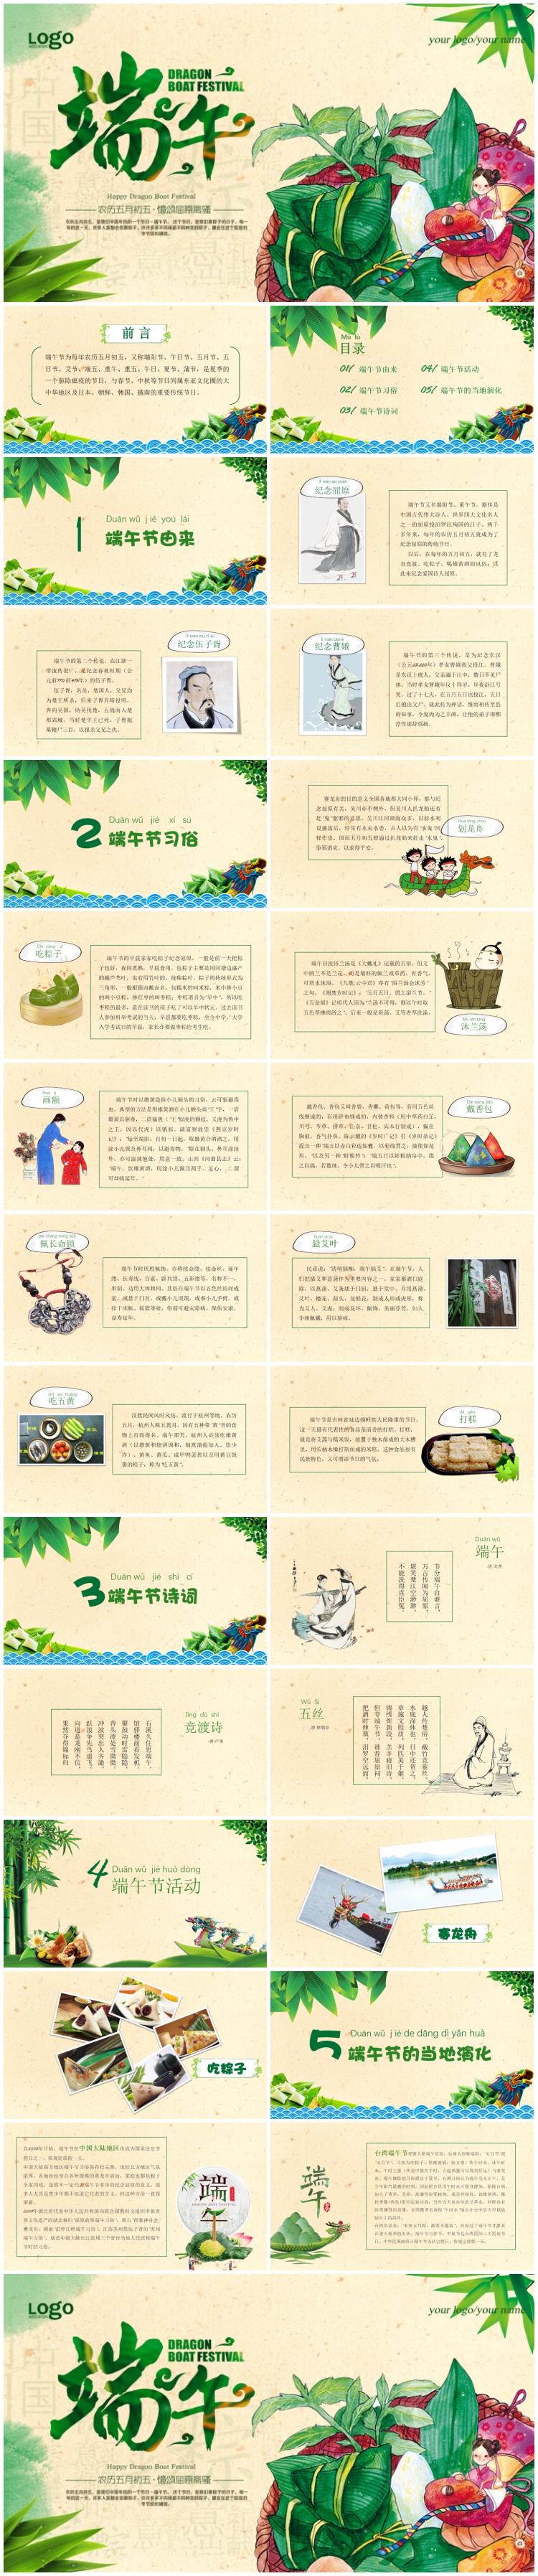 端午节中国风幻灯片模板